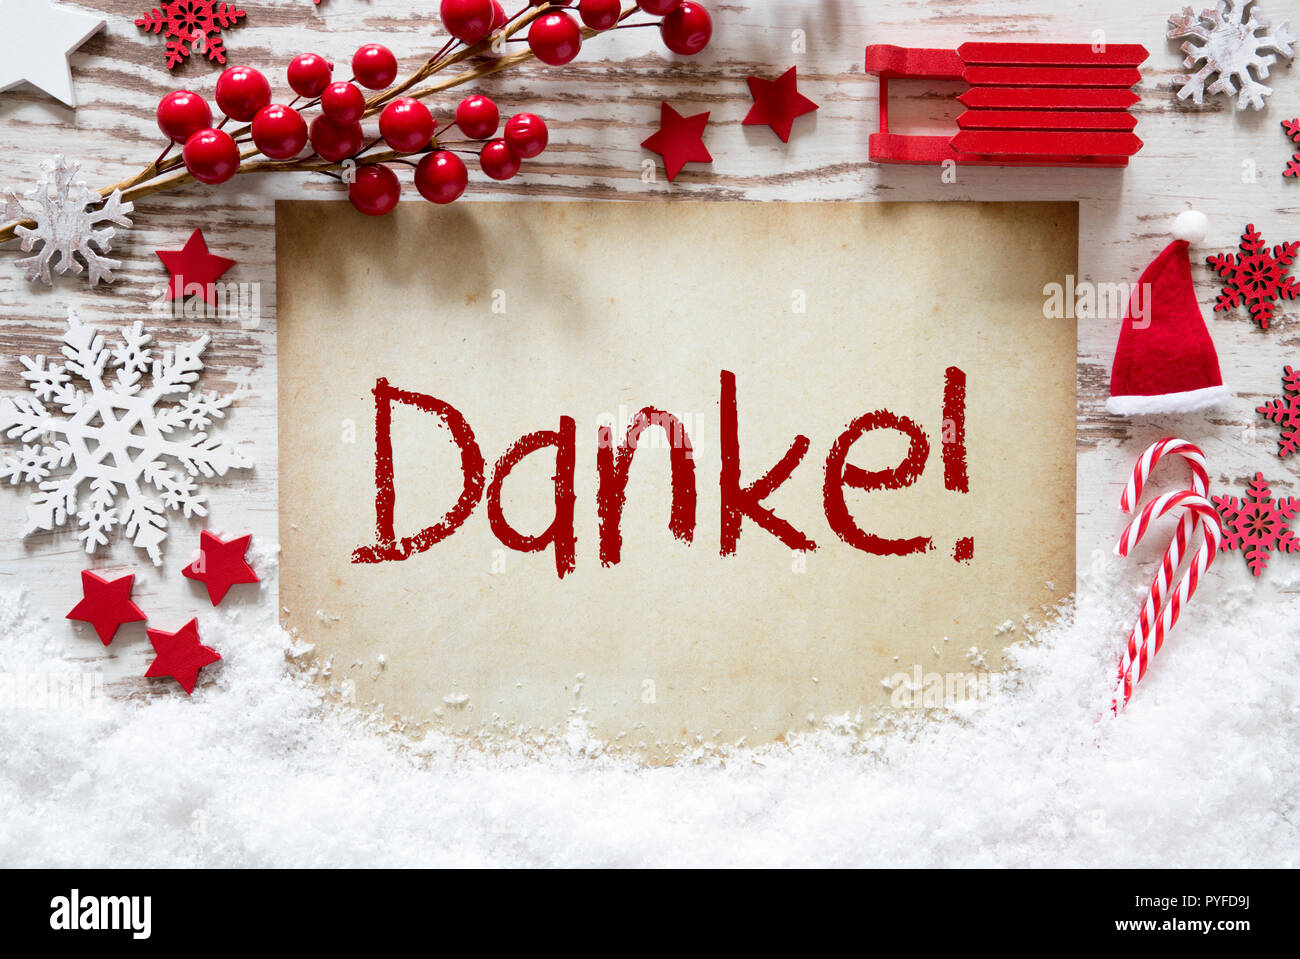 Helle Weihnachten Dekoration, Schnee, Danke, vielen Dank, dass Sie sich  Stockfotografie - Alamy